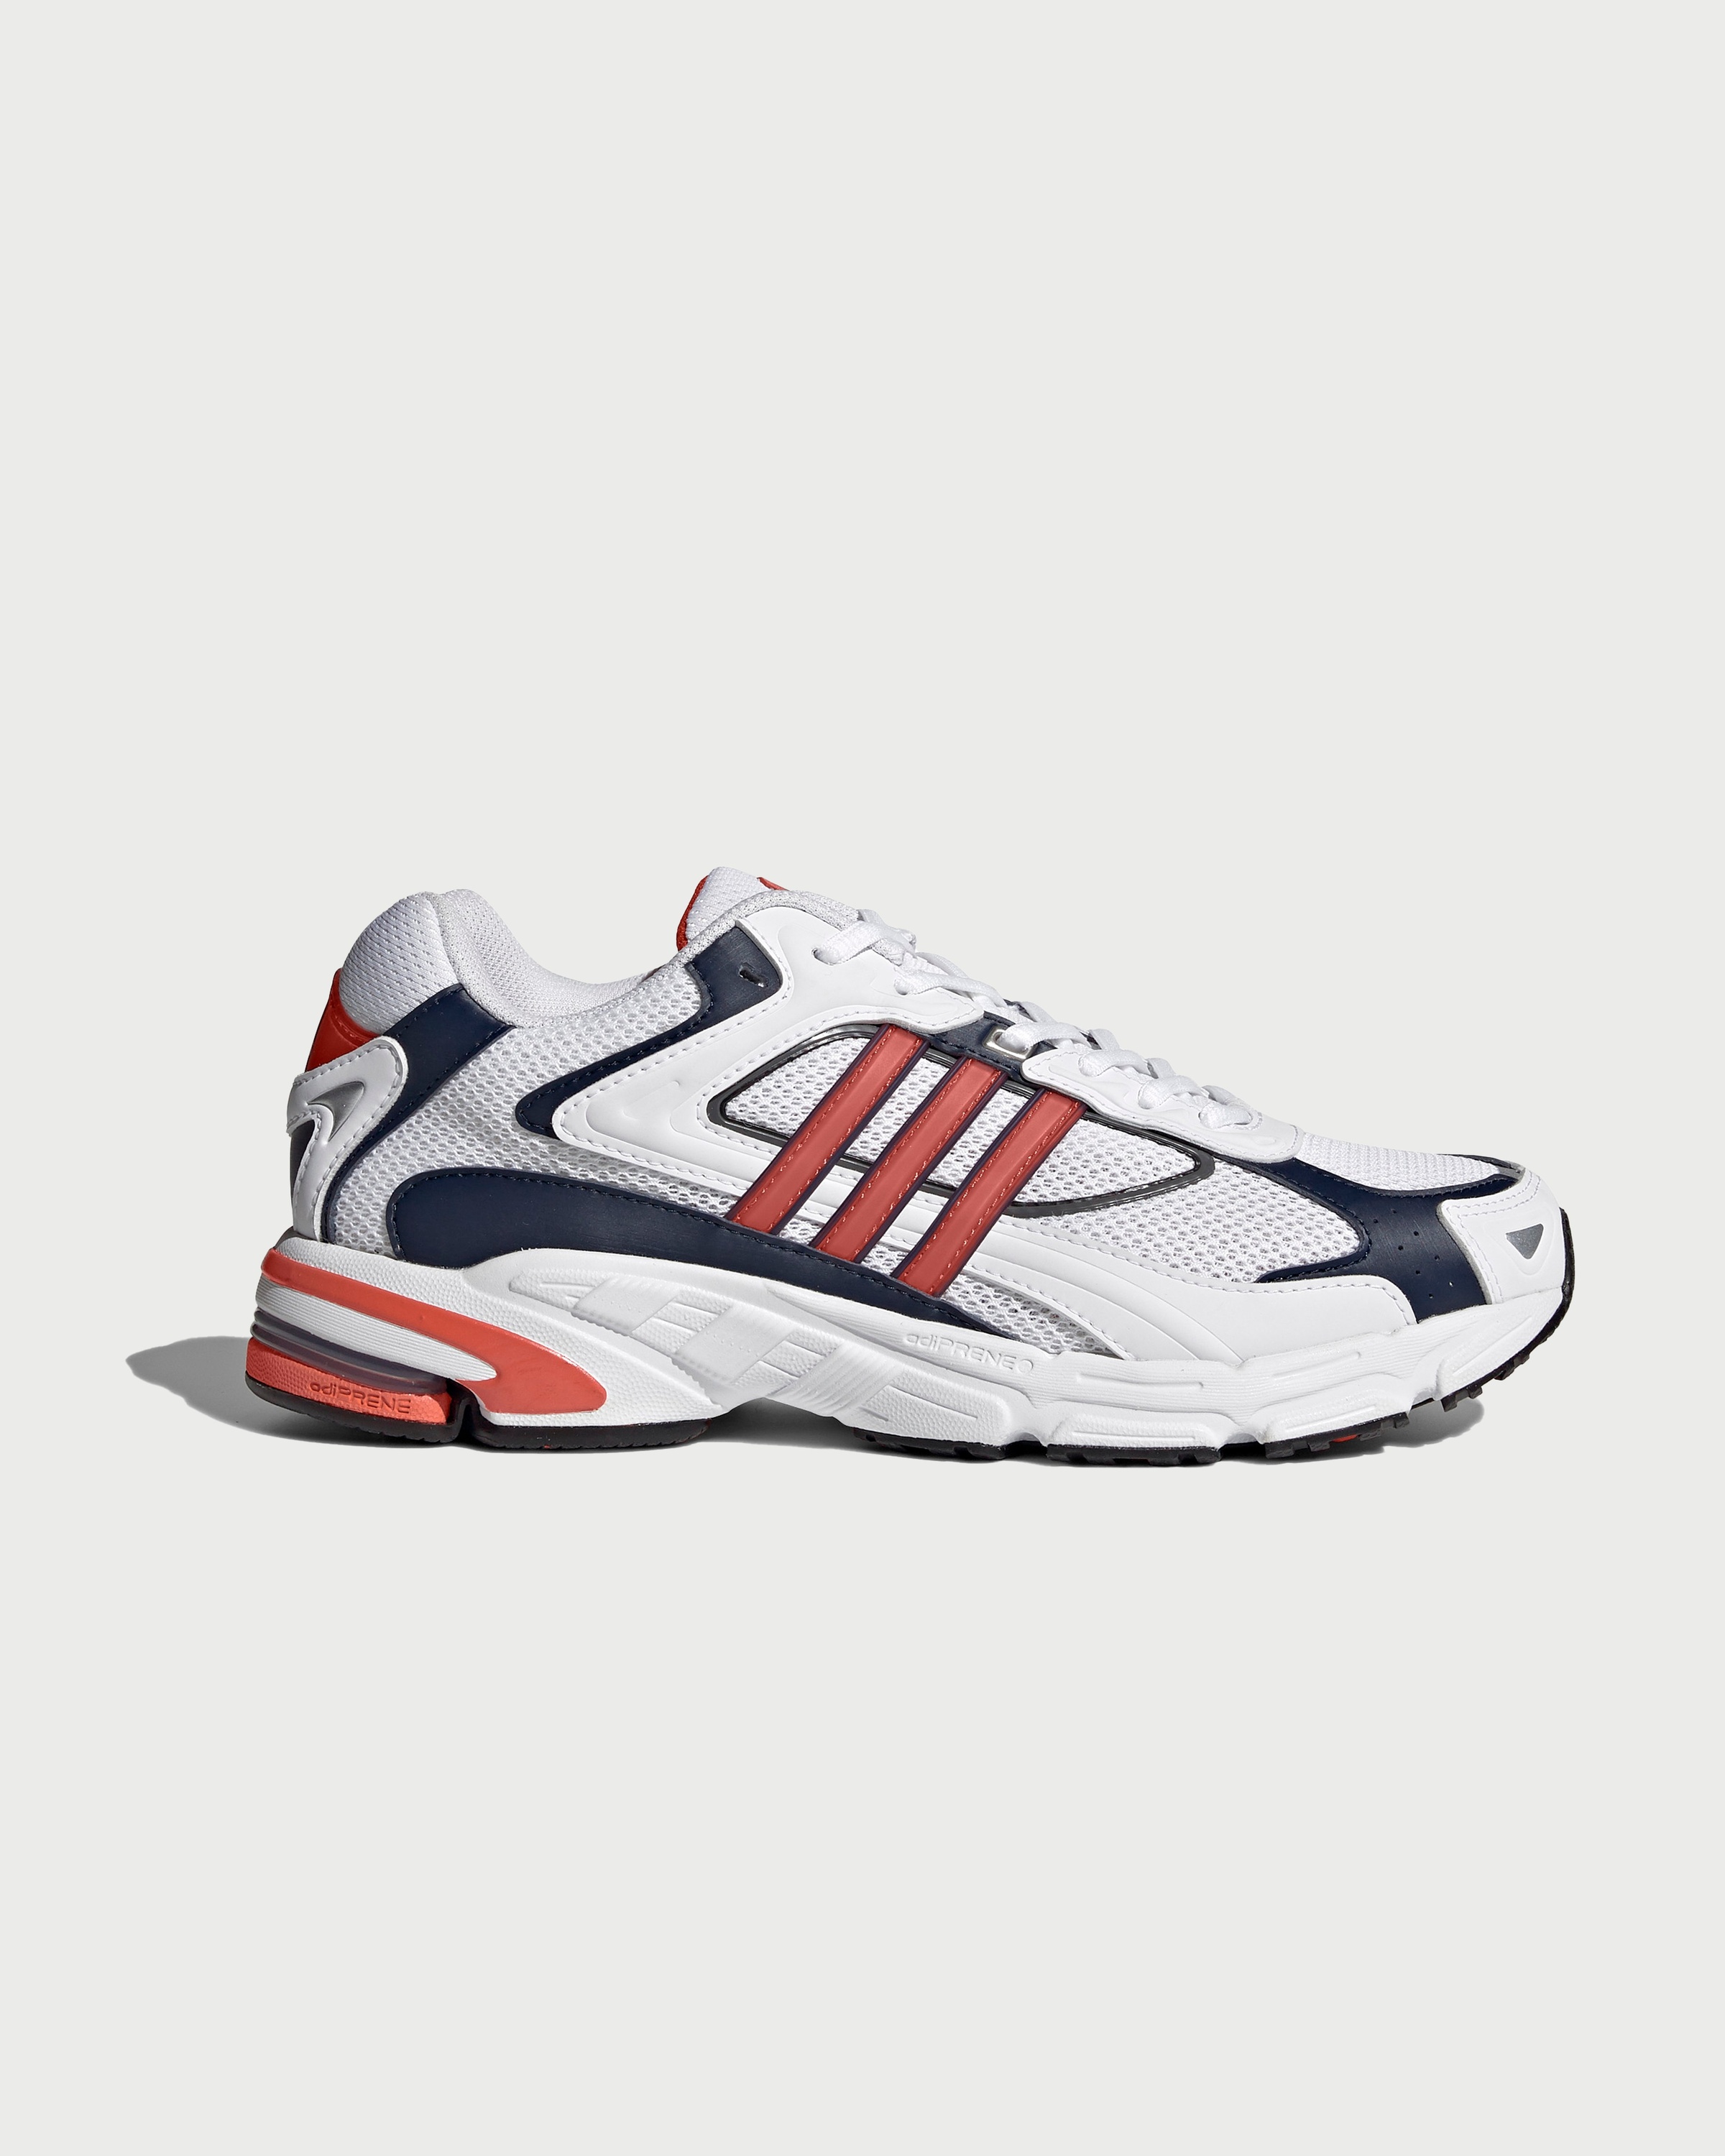 Adidas – Response CL White/Orange - Sneakers - White - Image 1